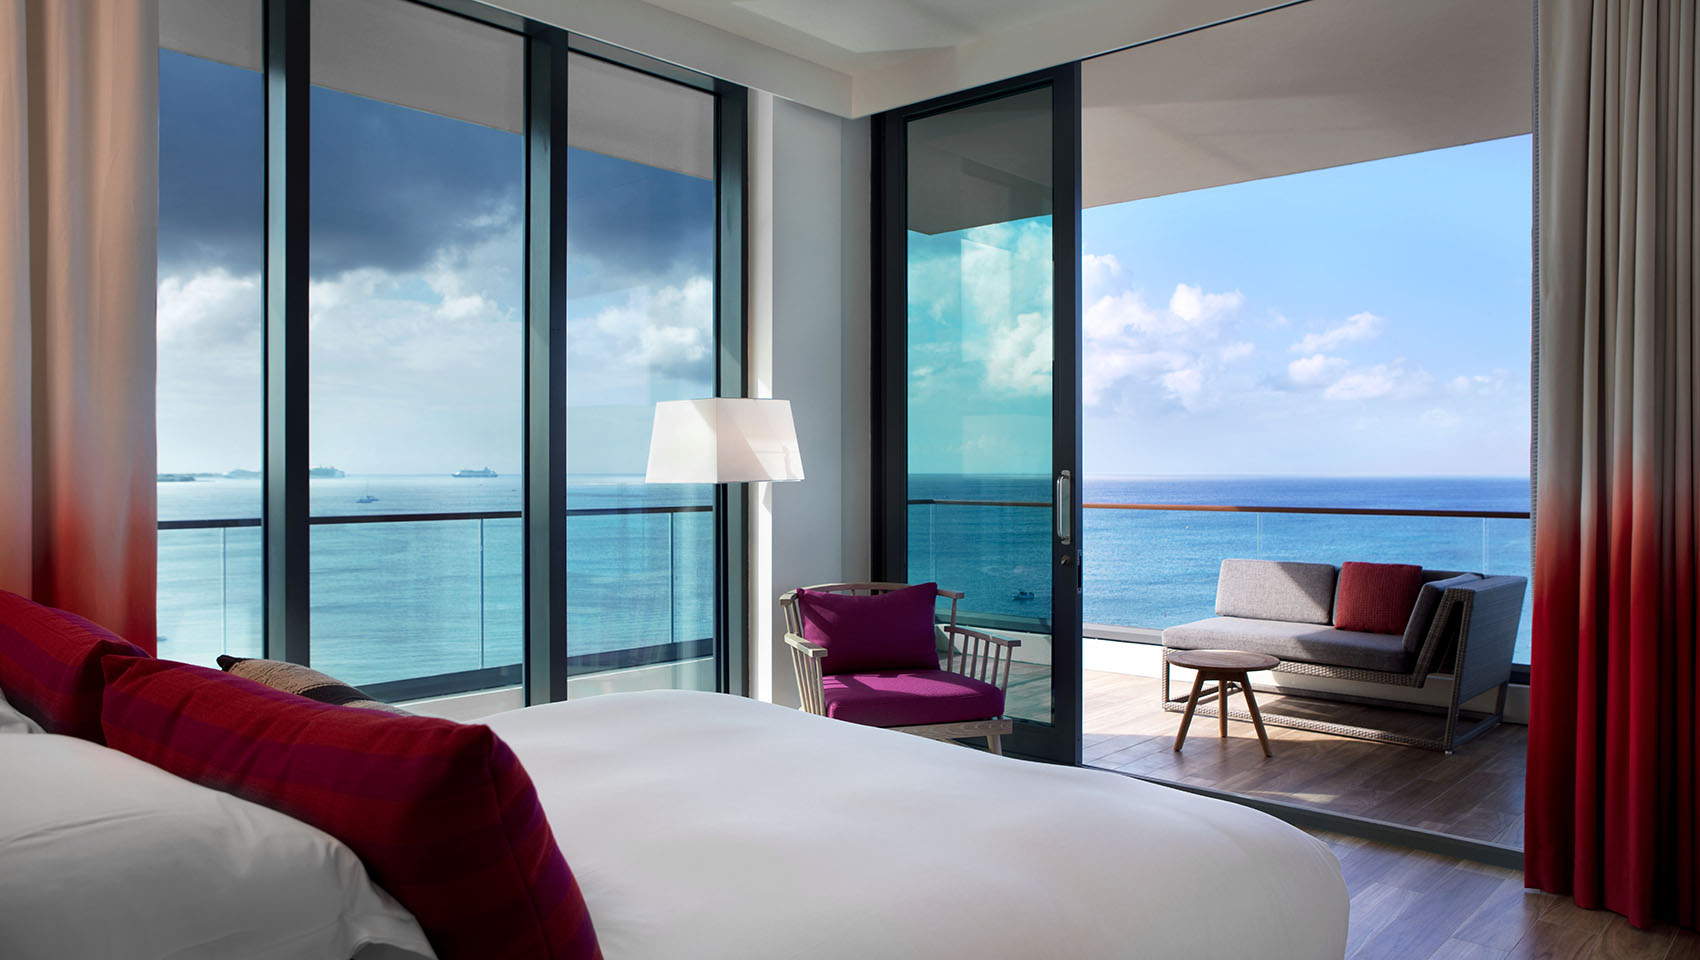 Seafire Guestroom with a ocean view veranda